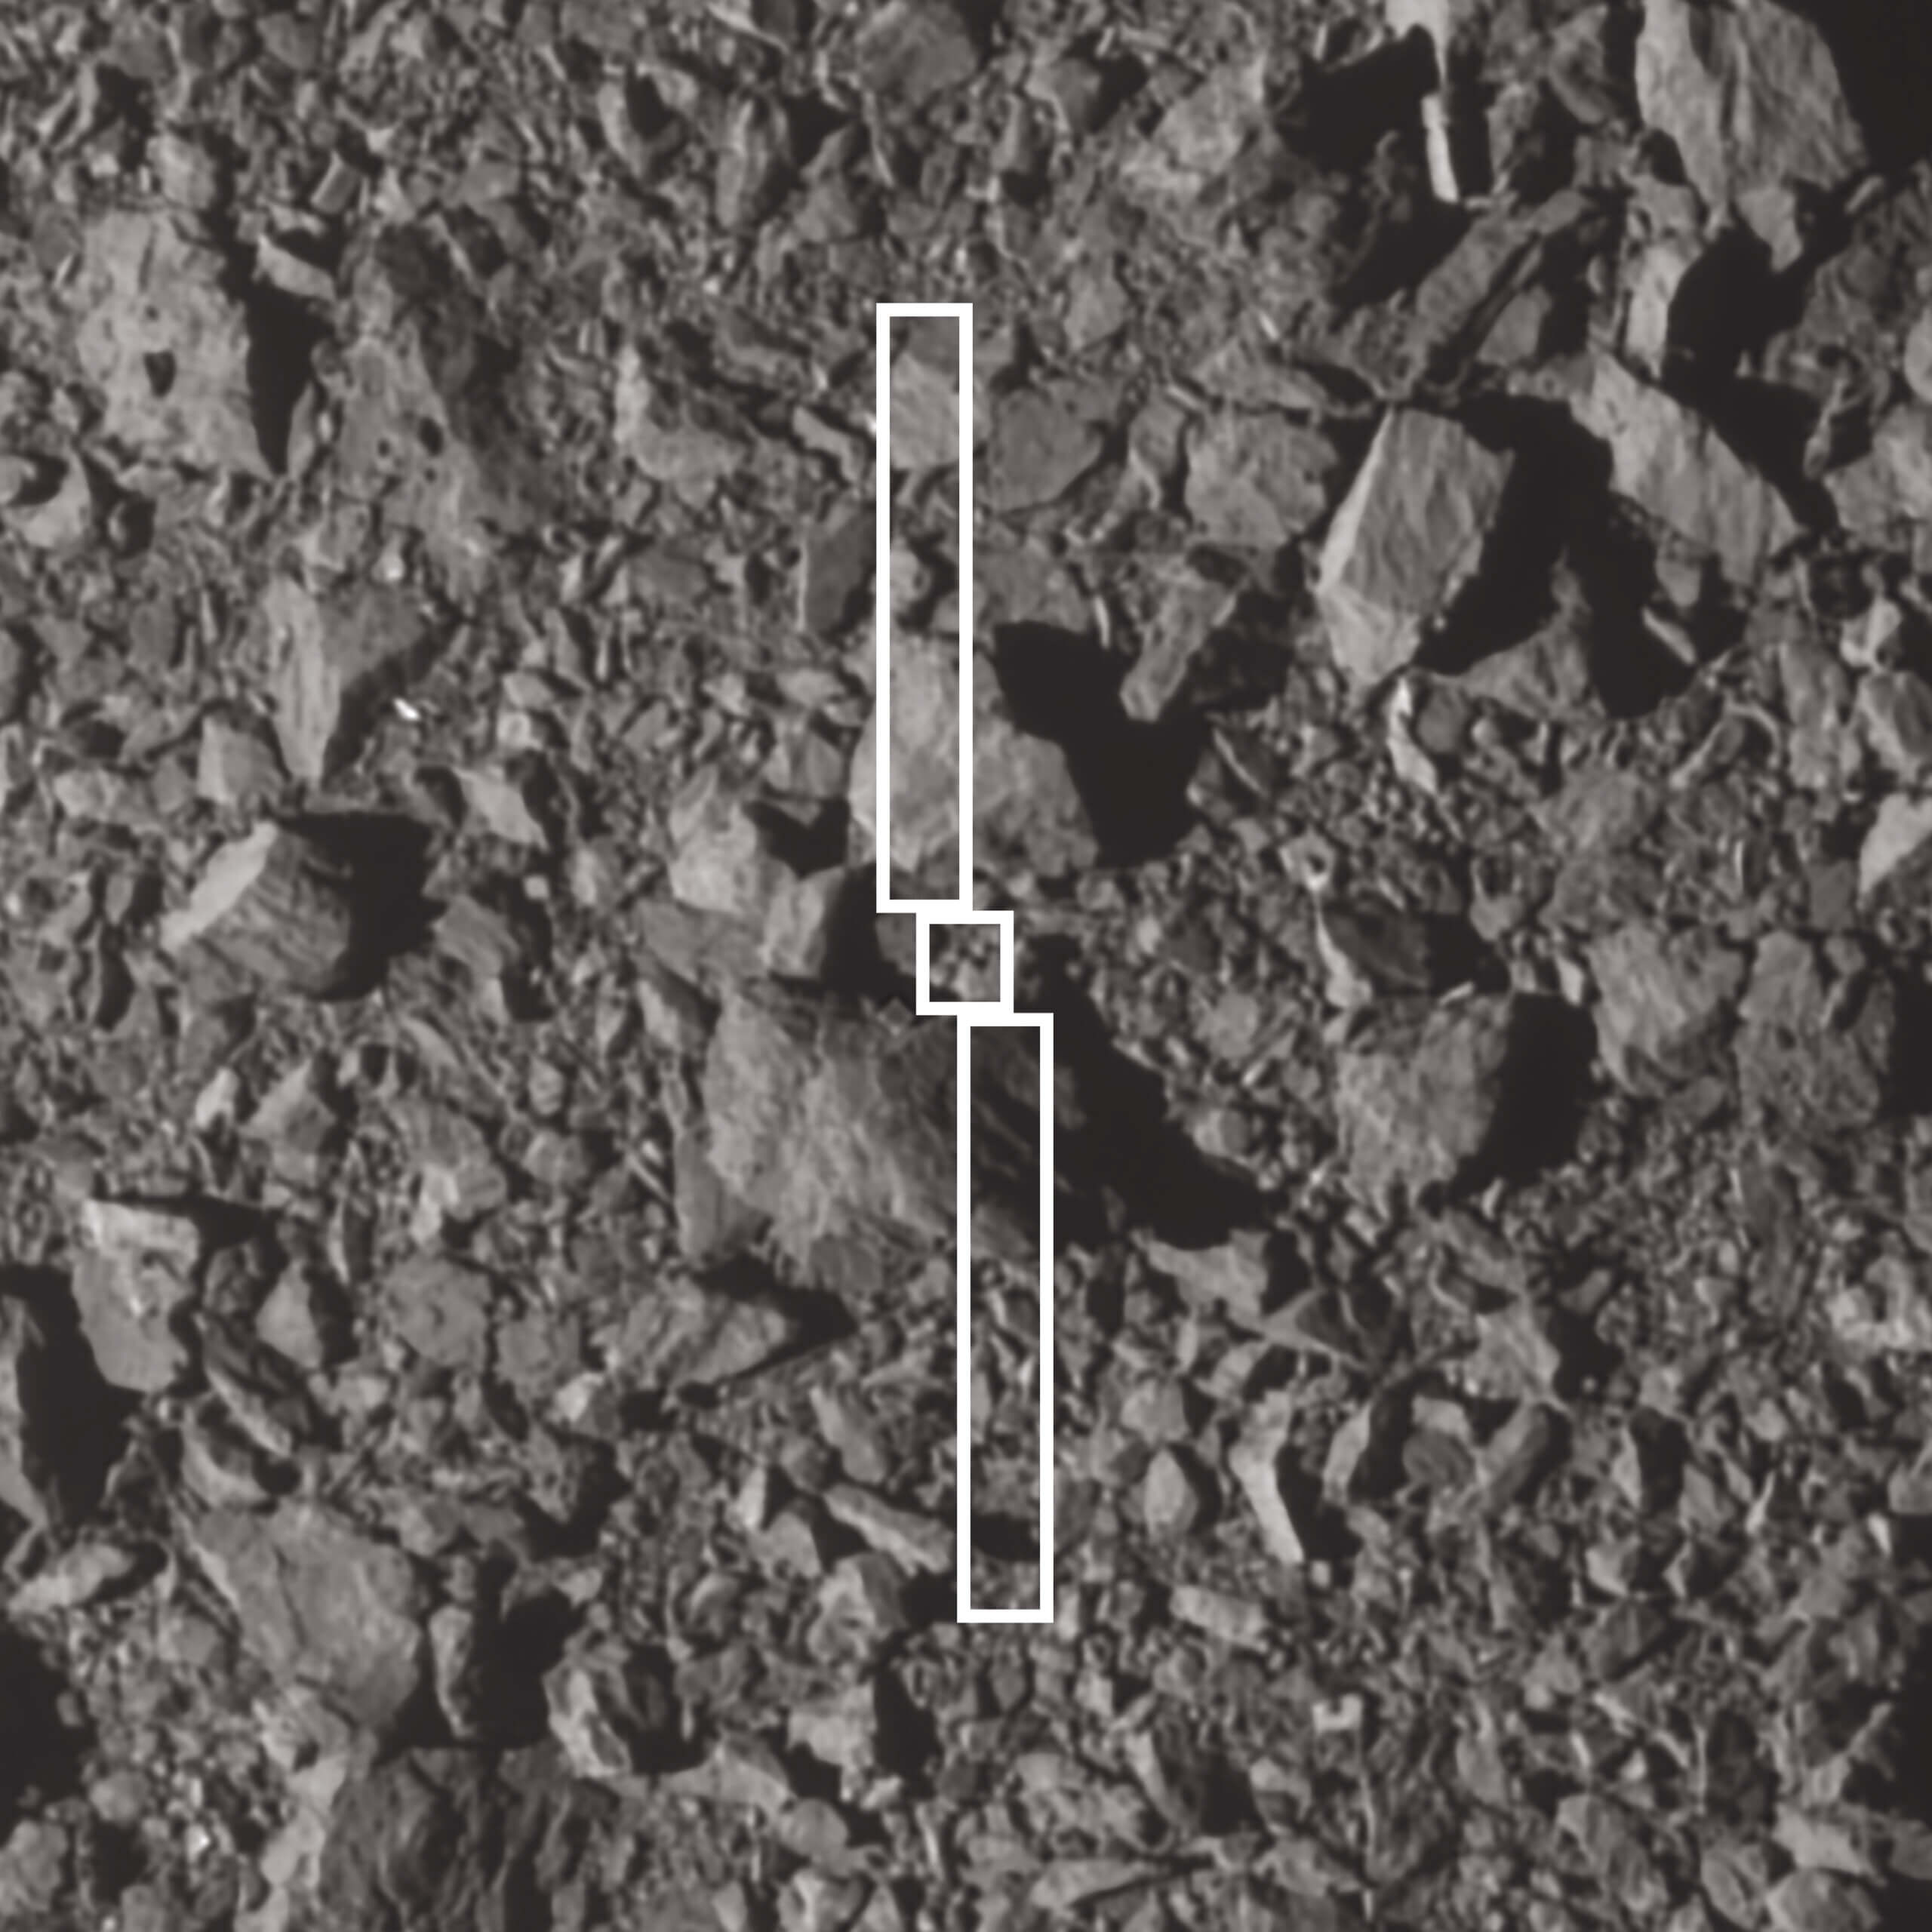 התמונה הזאת מראה את טביעת הרגל של החללית DART ושני הלוחות הסולריים הארוכים שלה מעל הנקודה שבה התנגשה באסטרואיד דימורפוס. רוחב הסלע הגדול יותר ליד אתר הפגיעה הוא כ-6.5 מטרים. DART צילמה את התמונה שלוש שניות לפני הפגיעה. קרדיט: NASA/Johns Hopkins APL